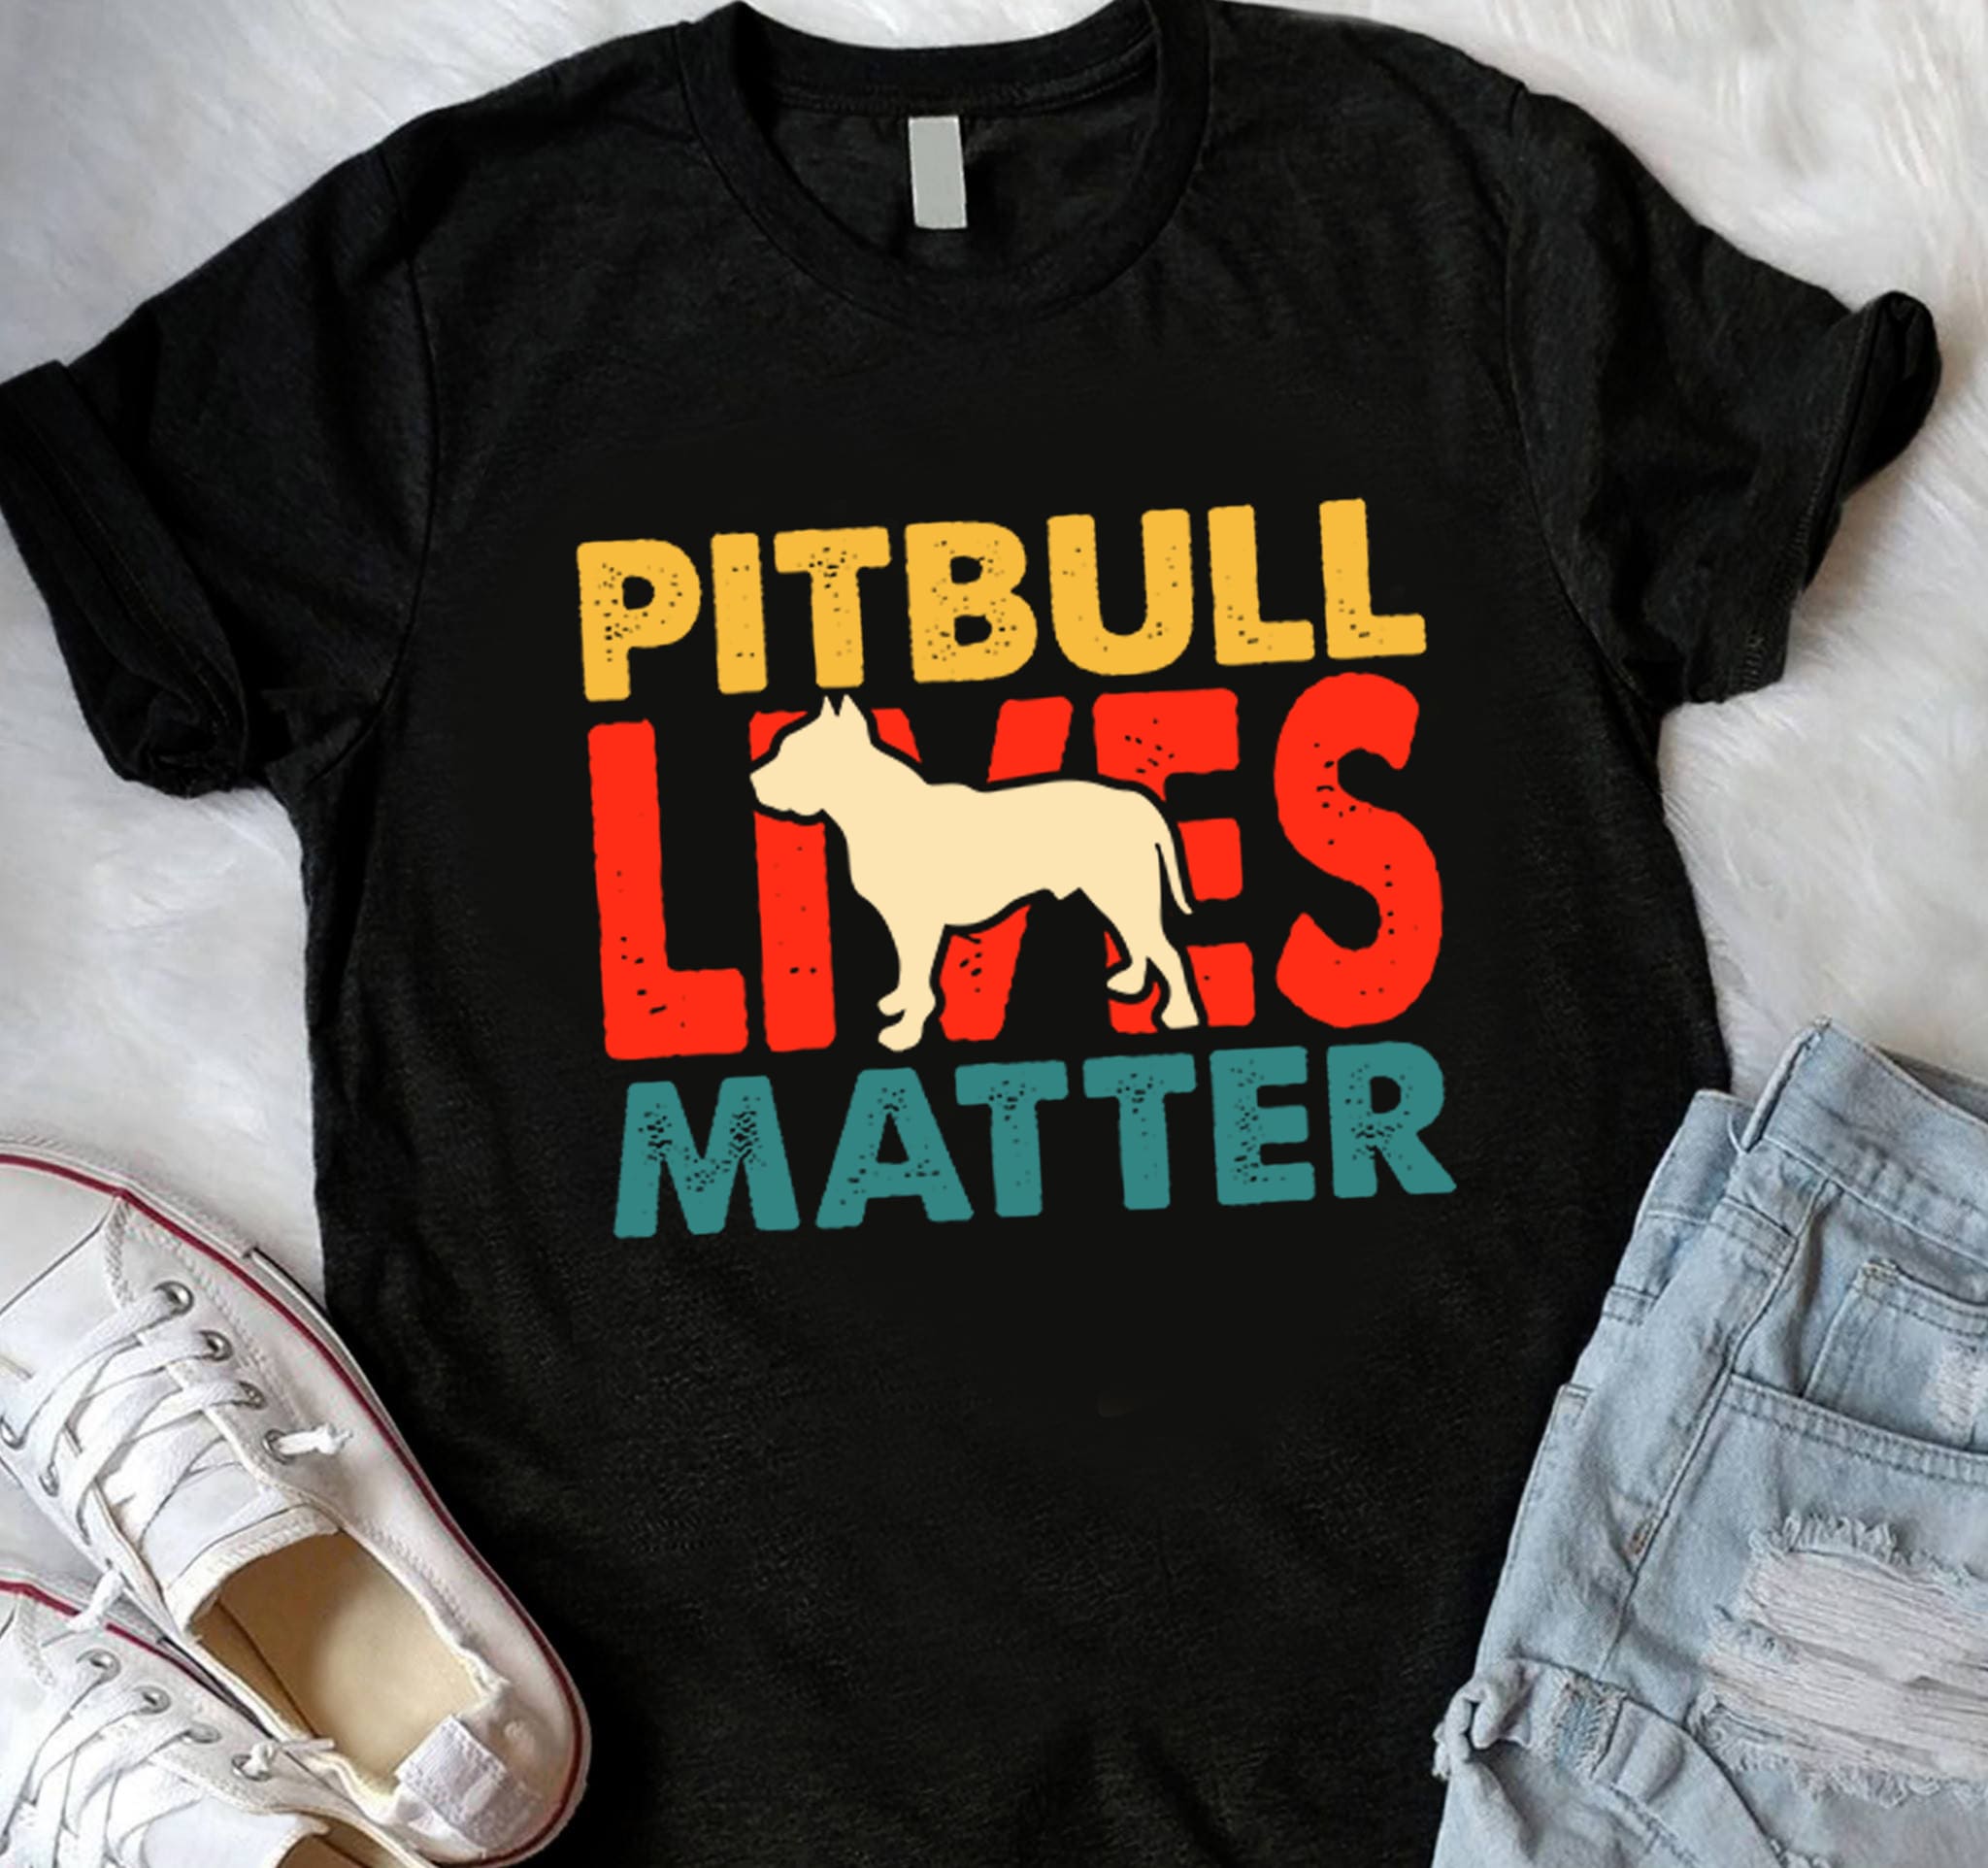 Pit Bull Lives Matter